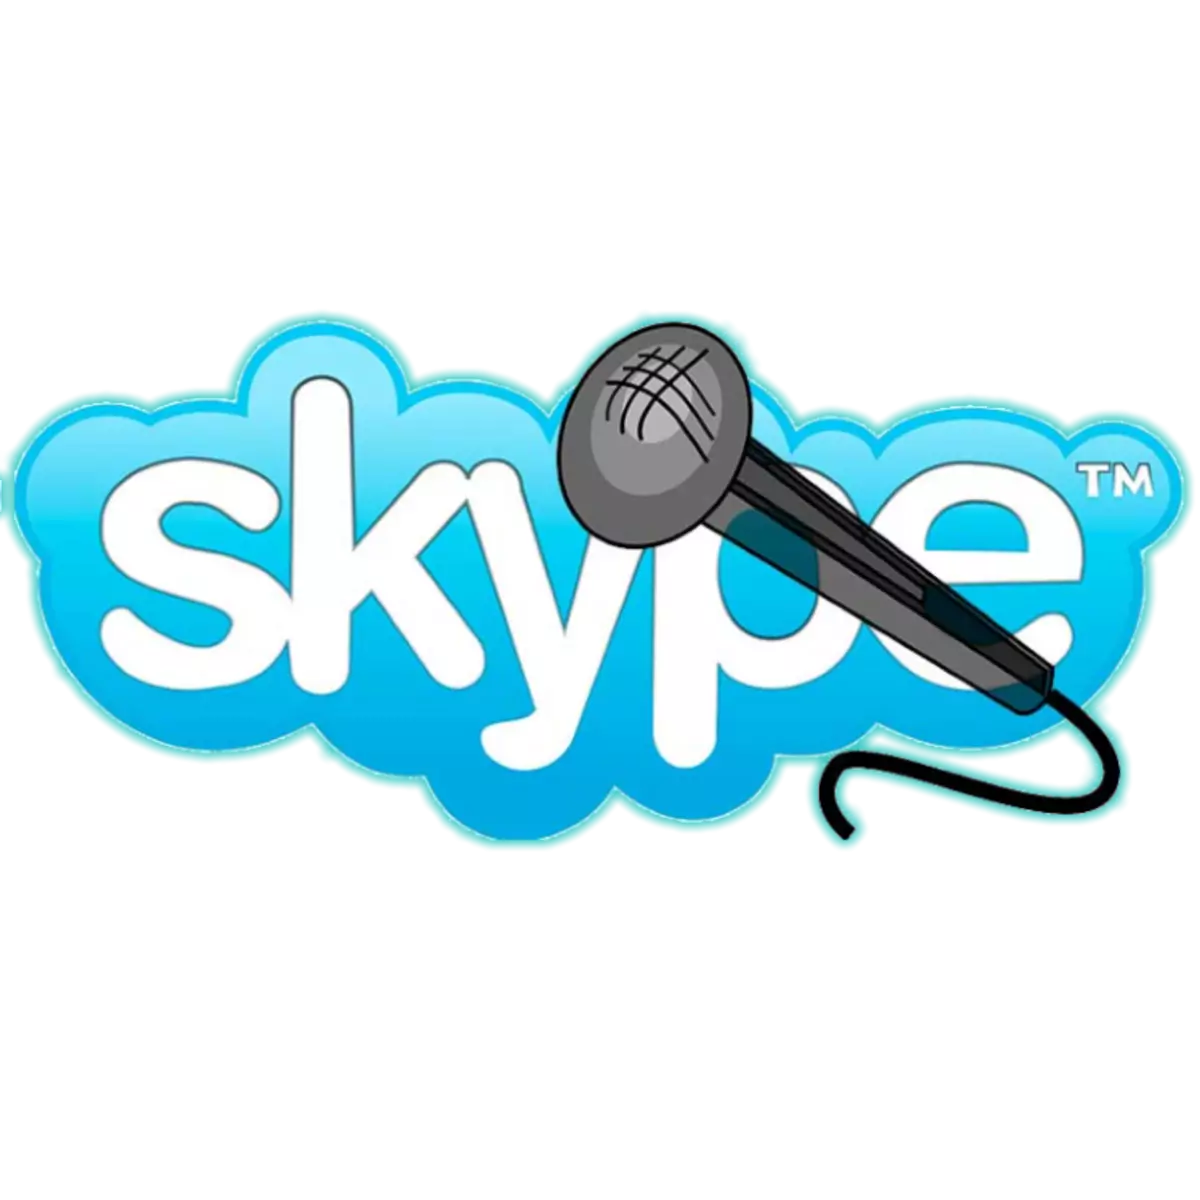 Impamvu mikoro idakora muri Skype